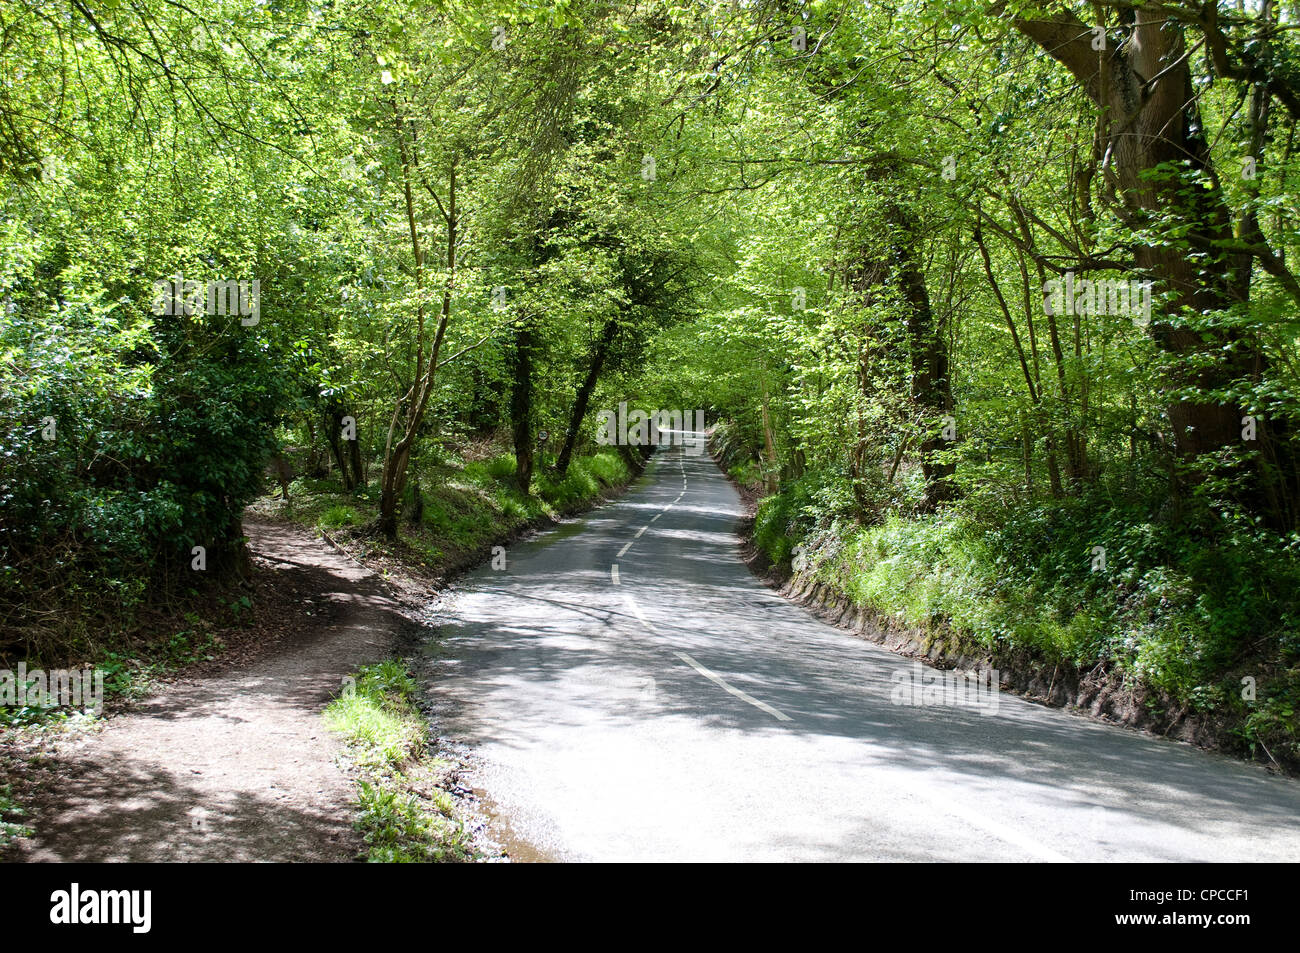 Country road, Hedgerley, Buckinghamshire, England, UK Stock Photo